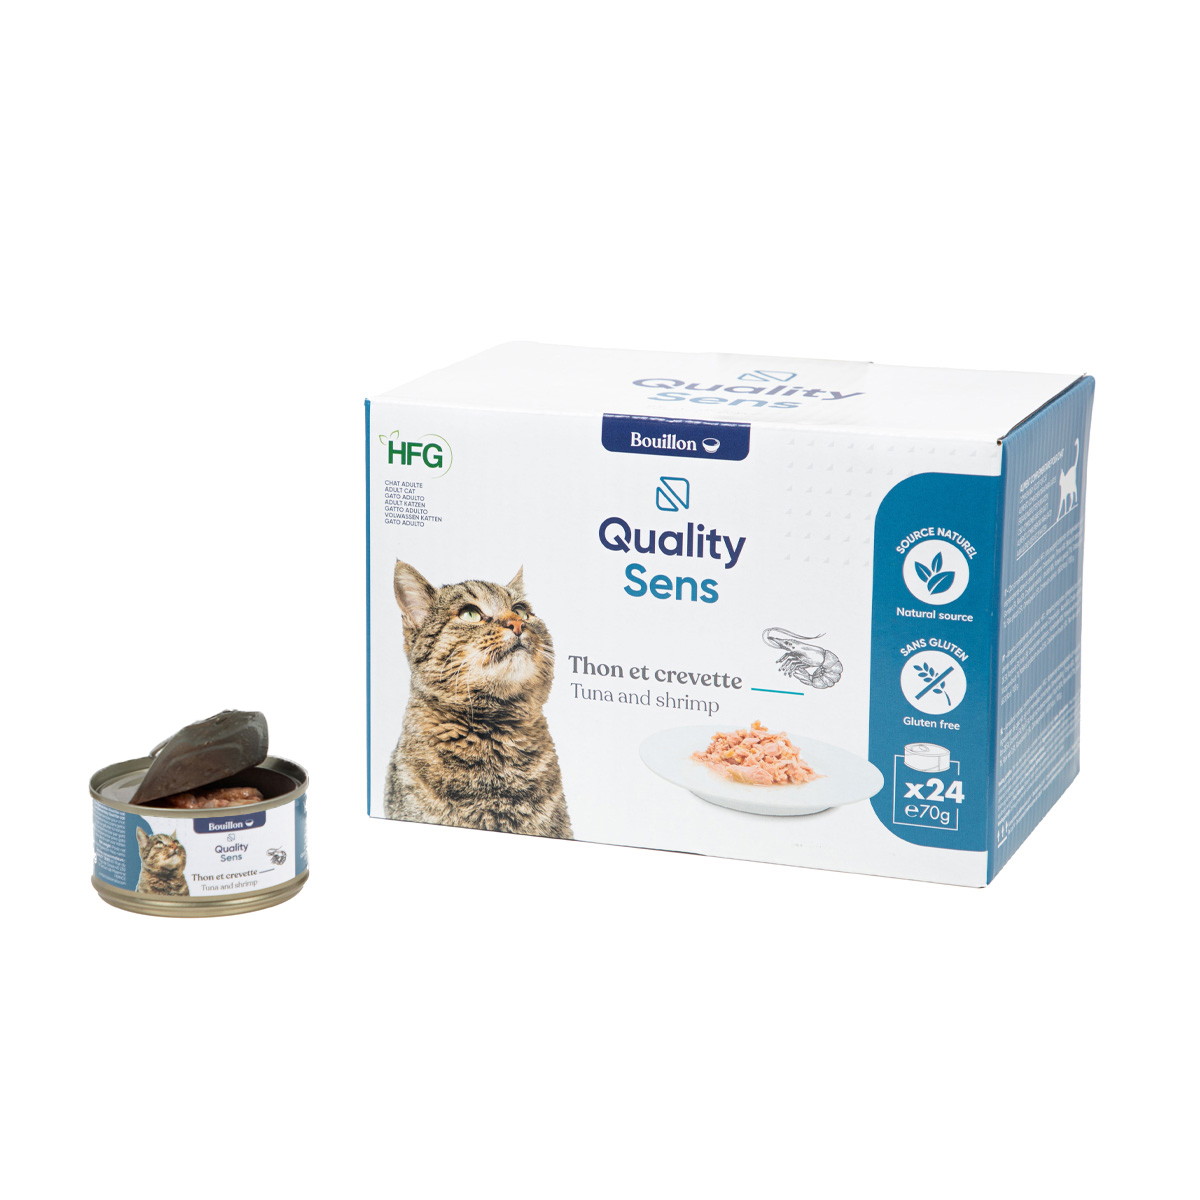 QUALITY SENS HFG - Patês em molho 100% Naturais 70g para gato & gatinho - 6 receitas à escolha